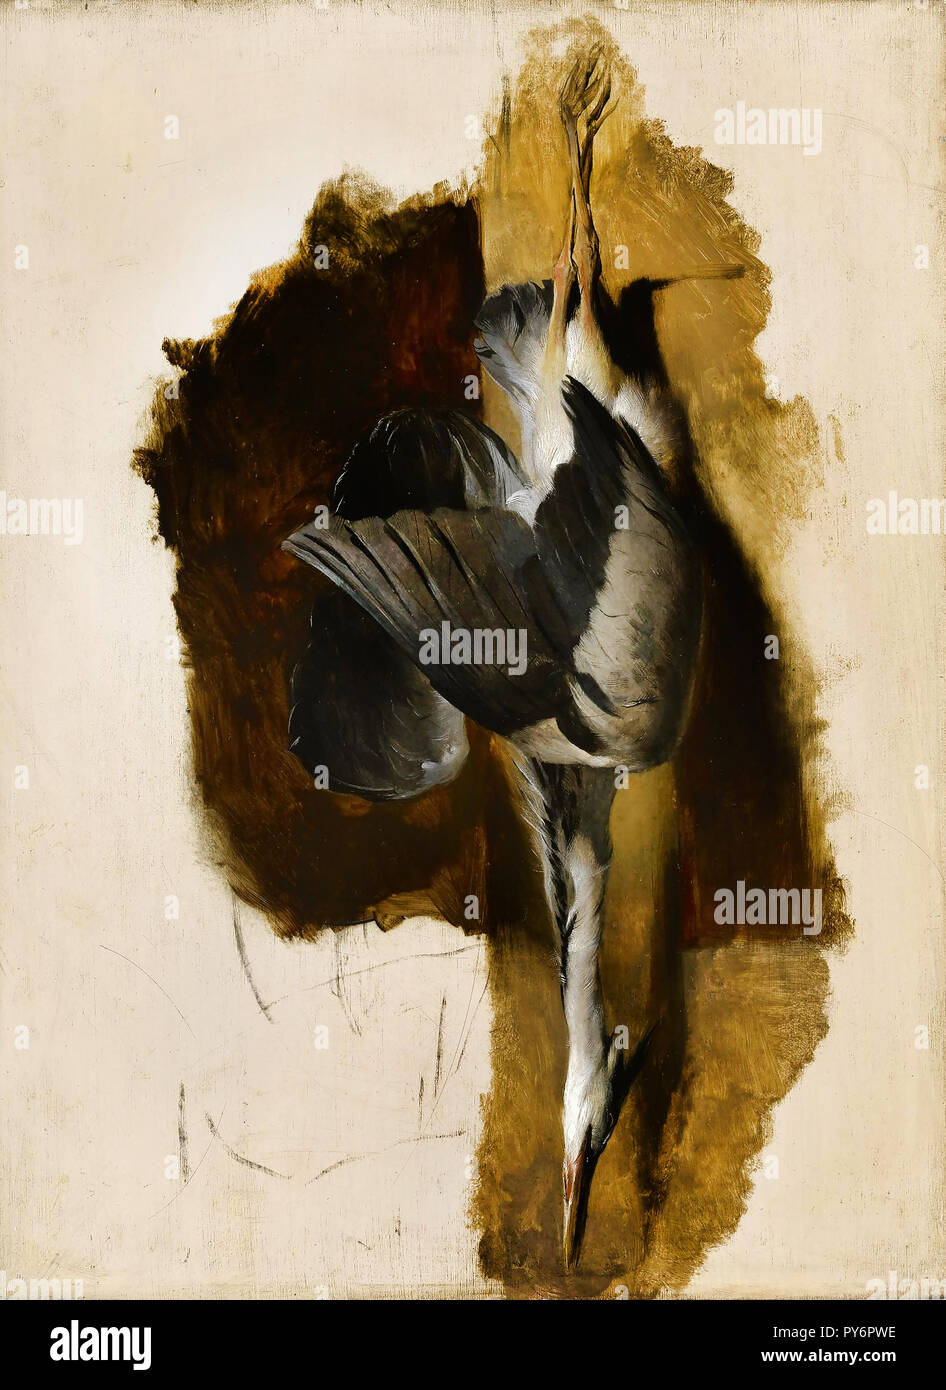 Edwin Henry Landseer, Studie von einem Toten Heron, ca. 1832 Öl auf Leinwand, das Museum der feinen künste, Houston, Texas, USA. Stockfoto